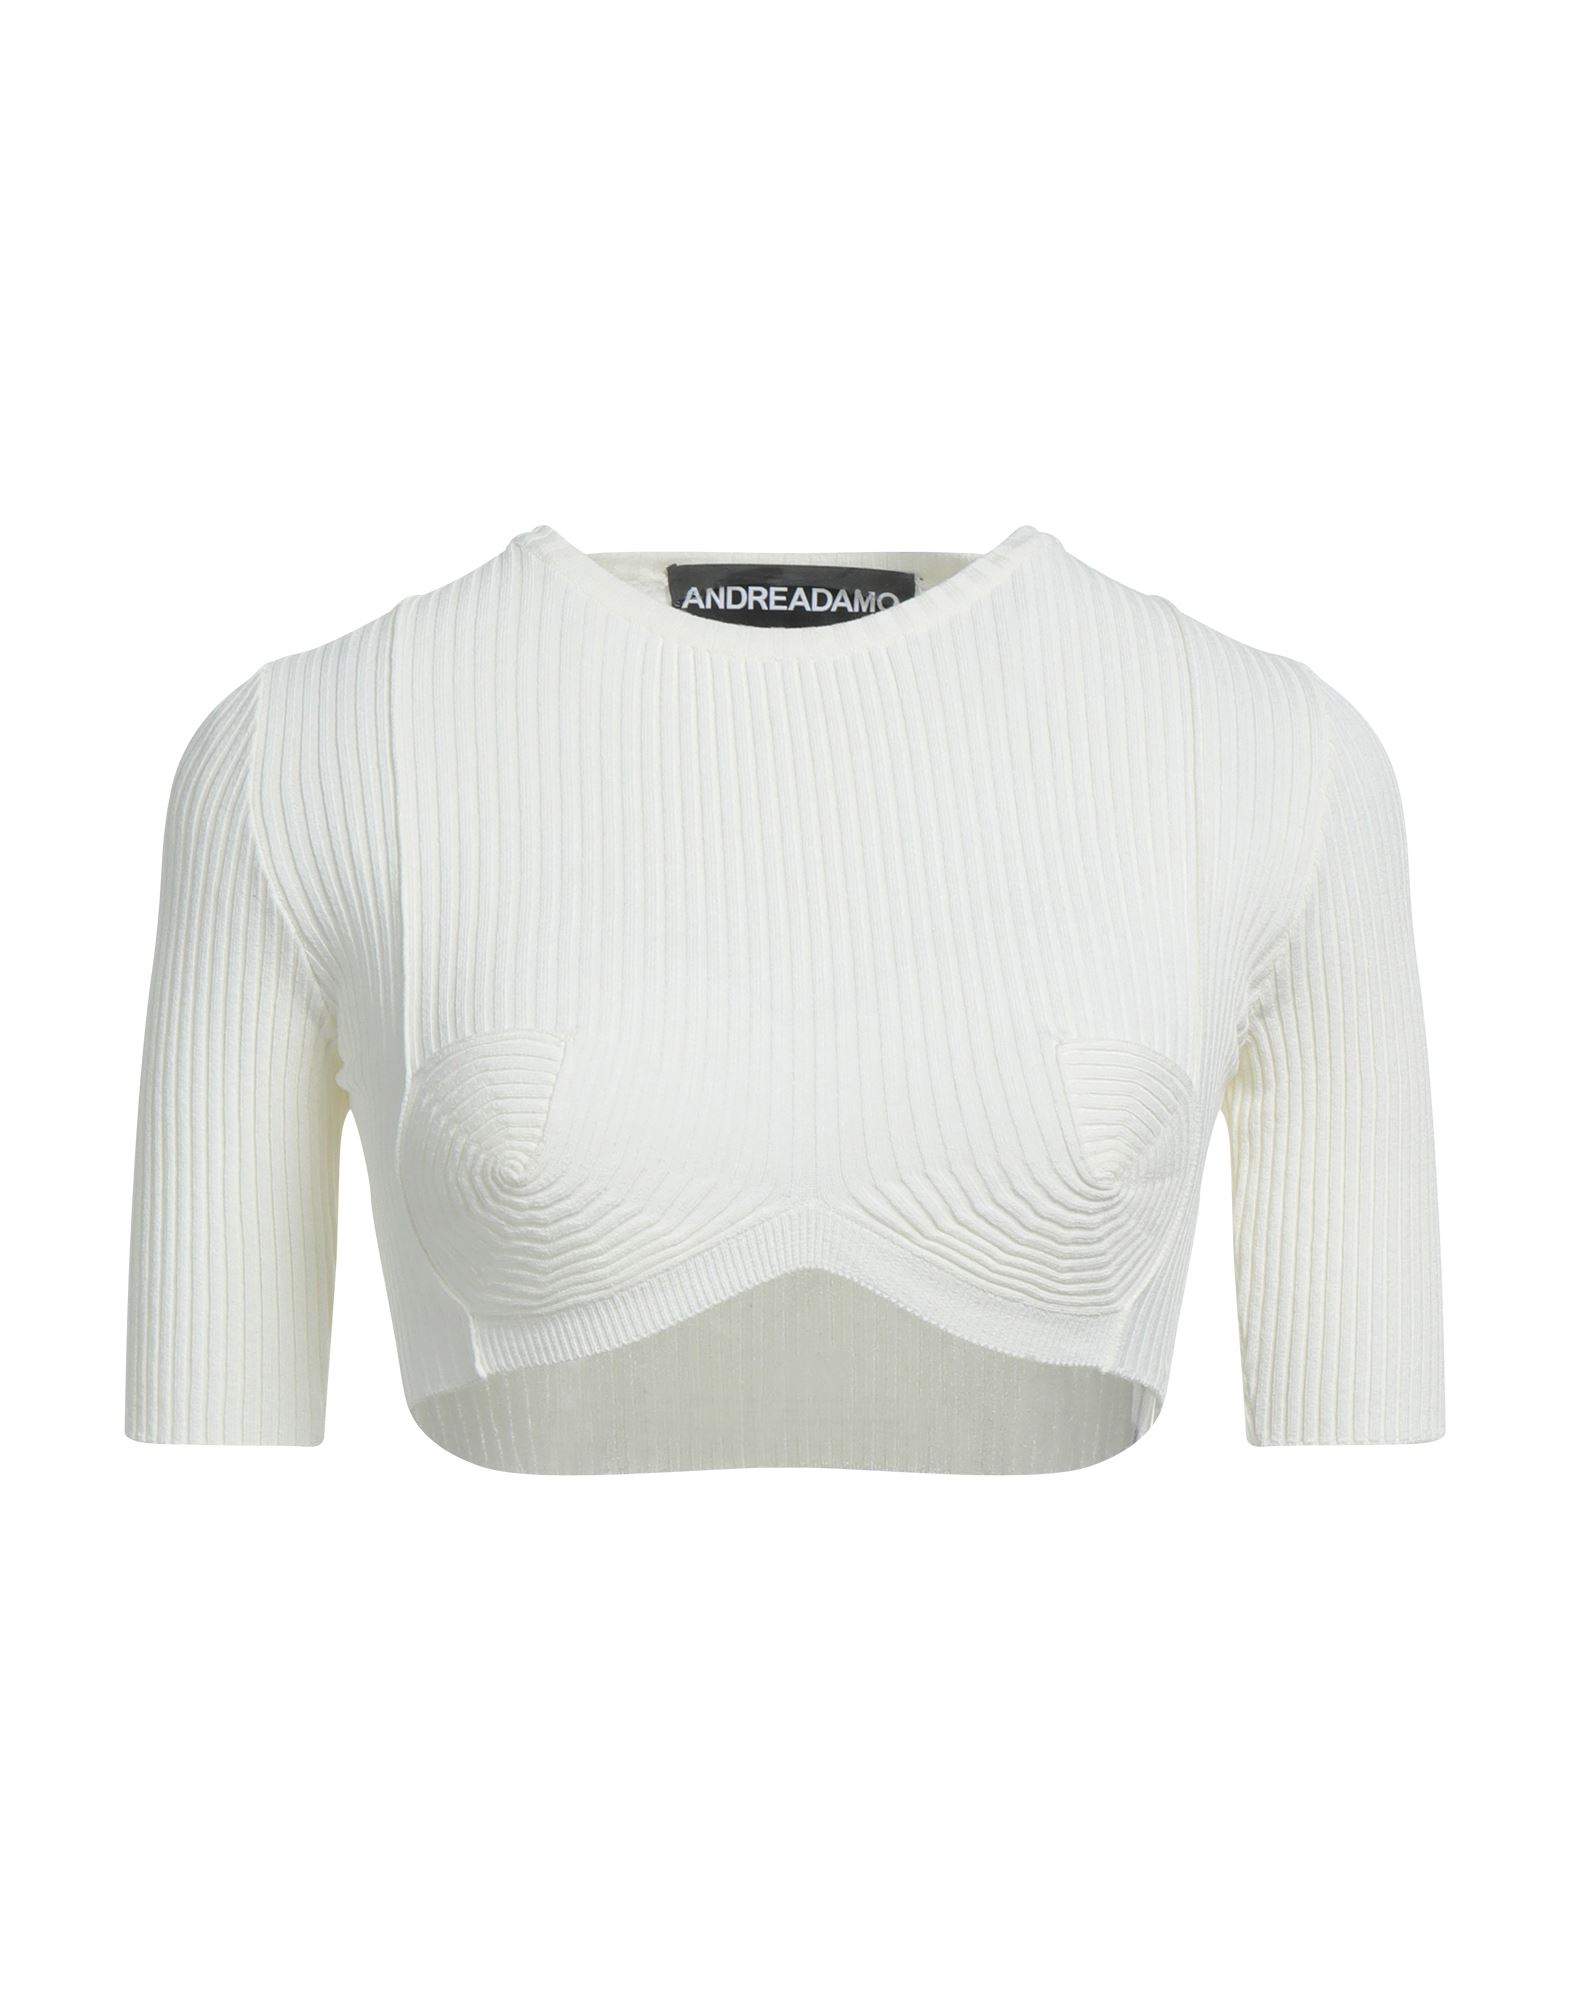 Adamo Andrea Adamo Sweaters In White